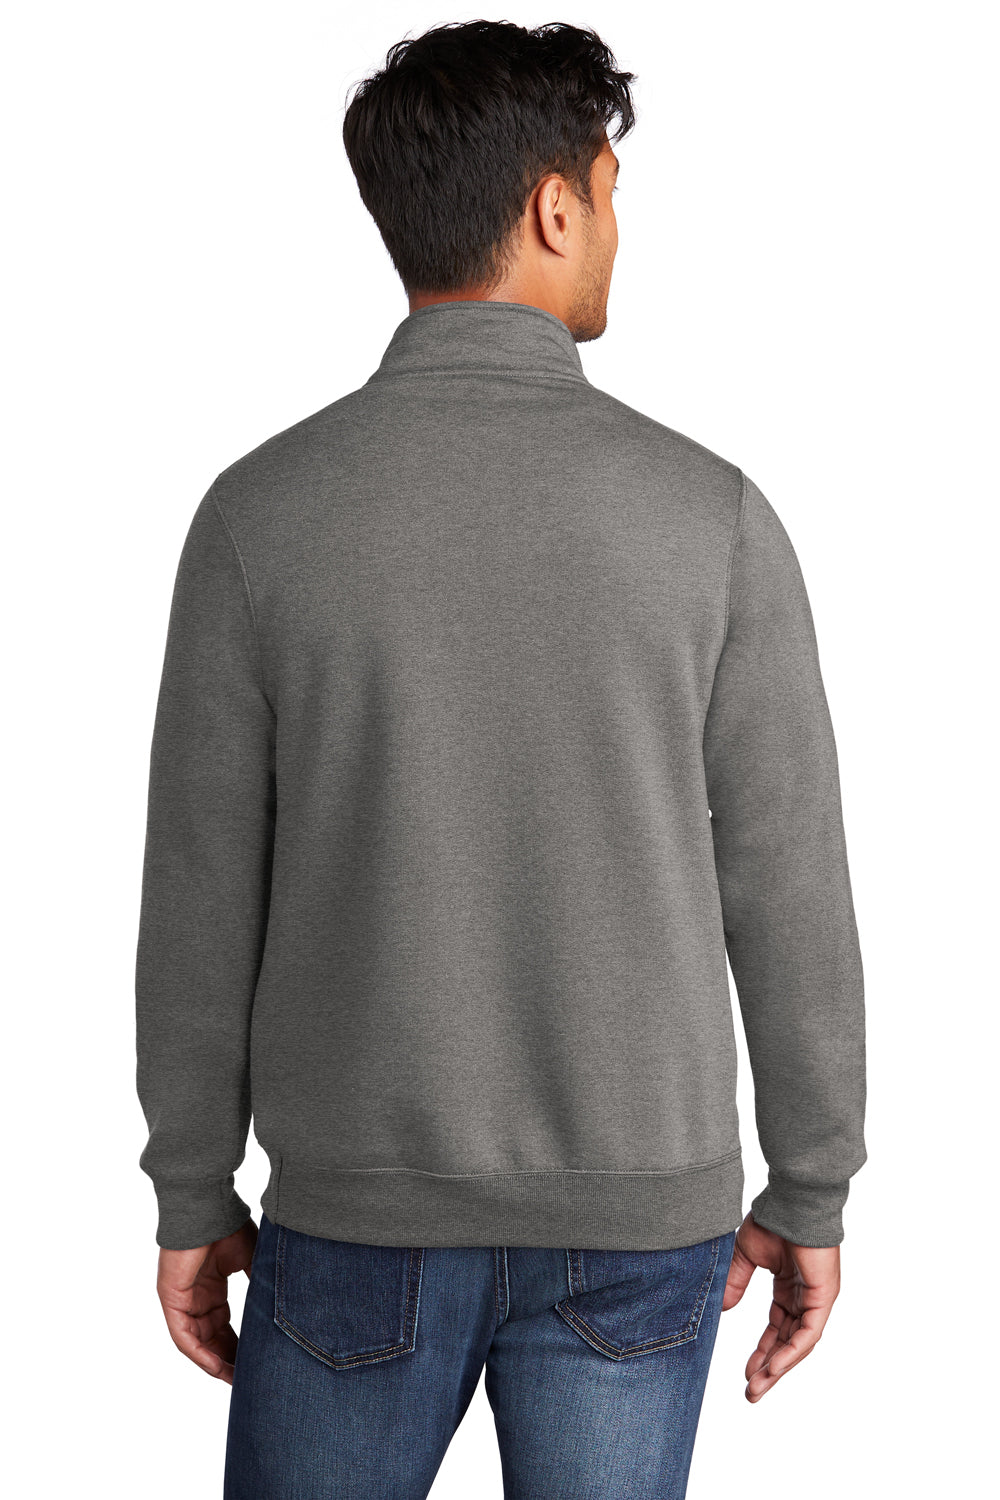 Port & Company Mens Core Fleece 1/4 Zip Sweatshirt Heather Graphite Grey Side